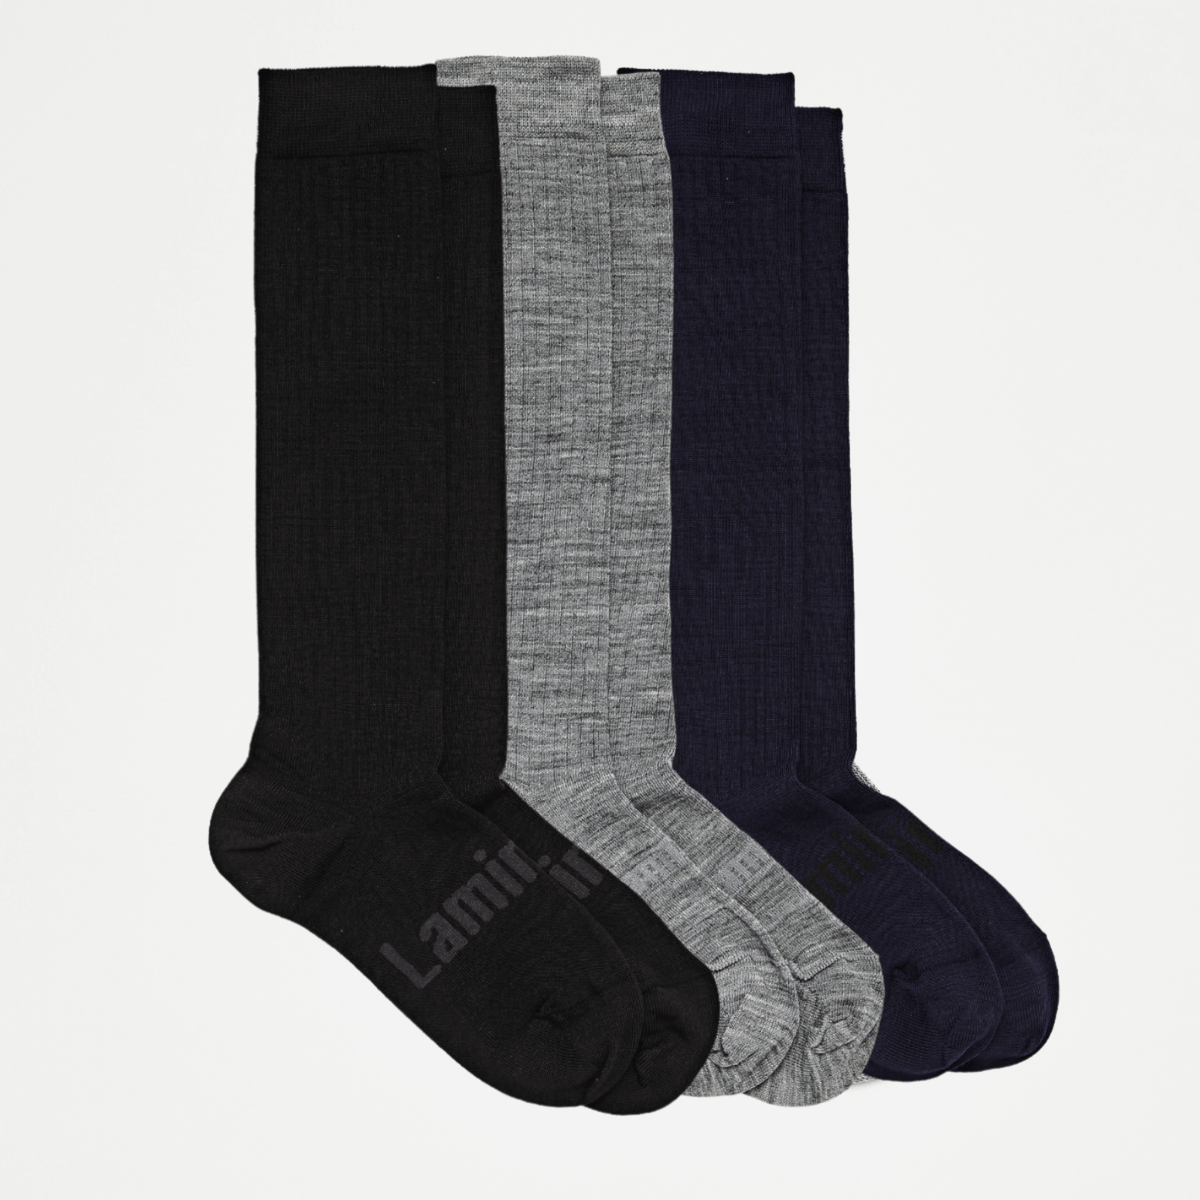 Merino Wool Knee High Socks | WOMAN + MAN | Essential